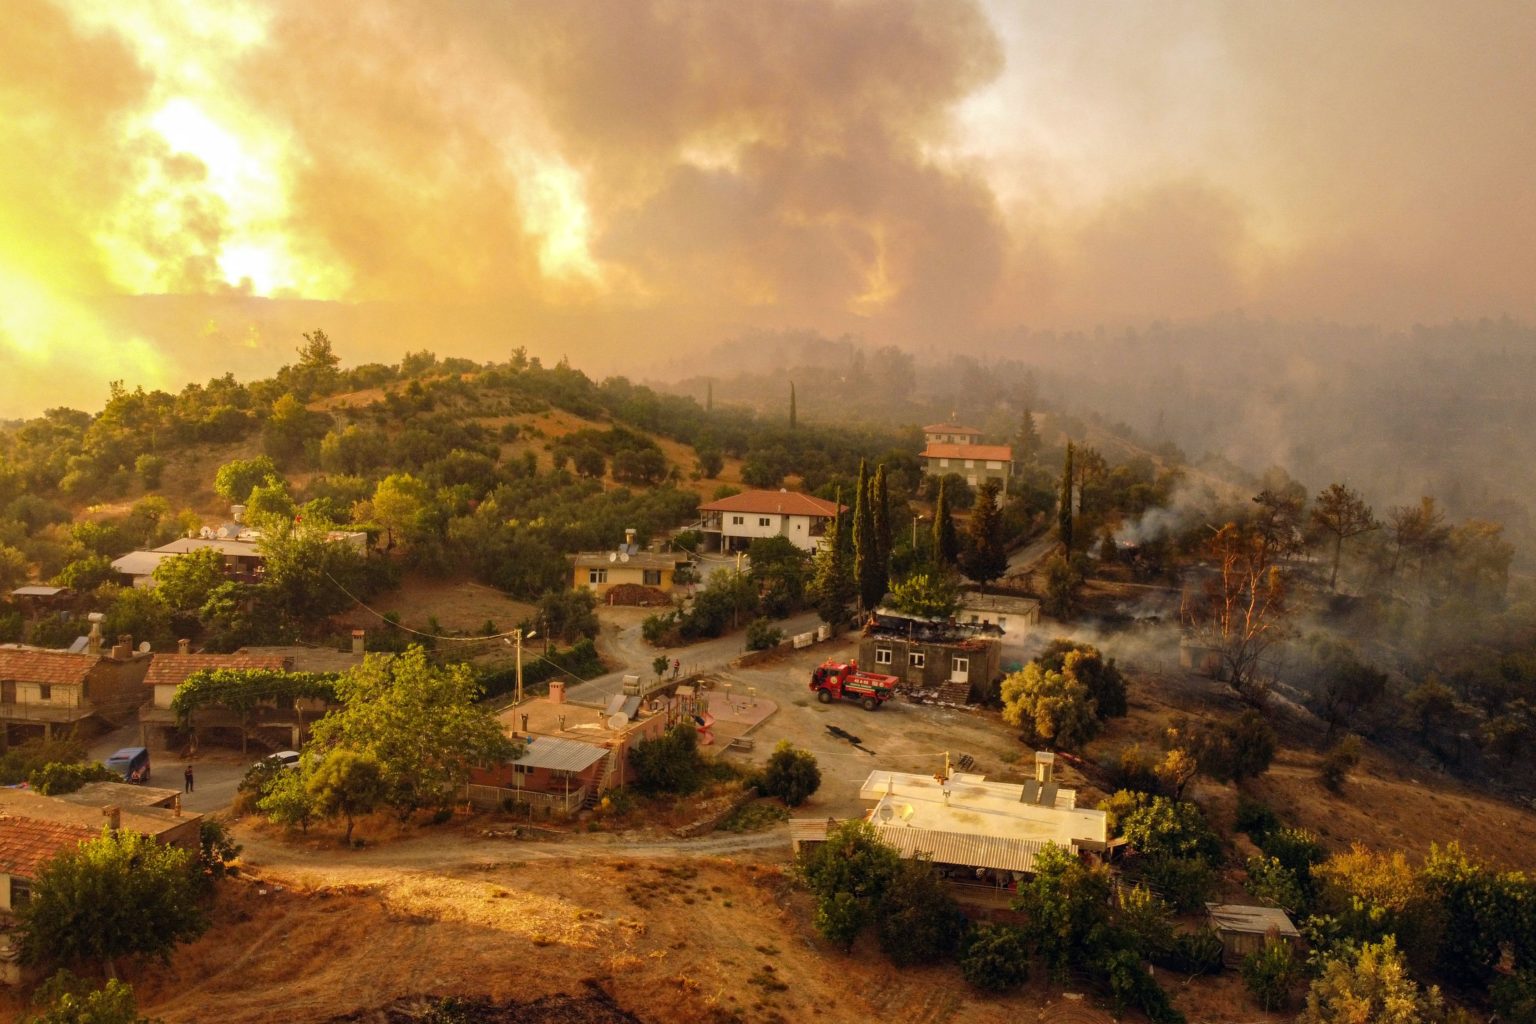 Photos Show Devastation Of Fire Ripping Through Mediterranean Tourist